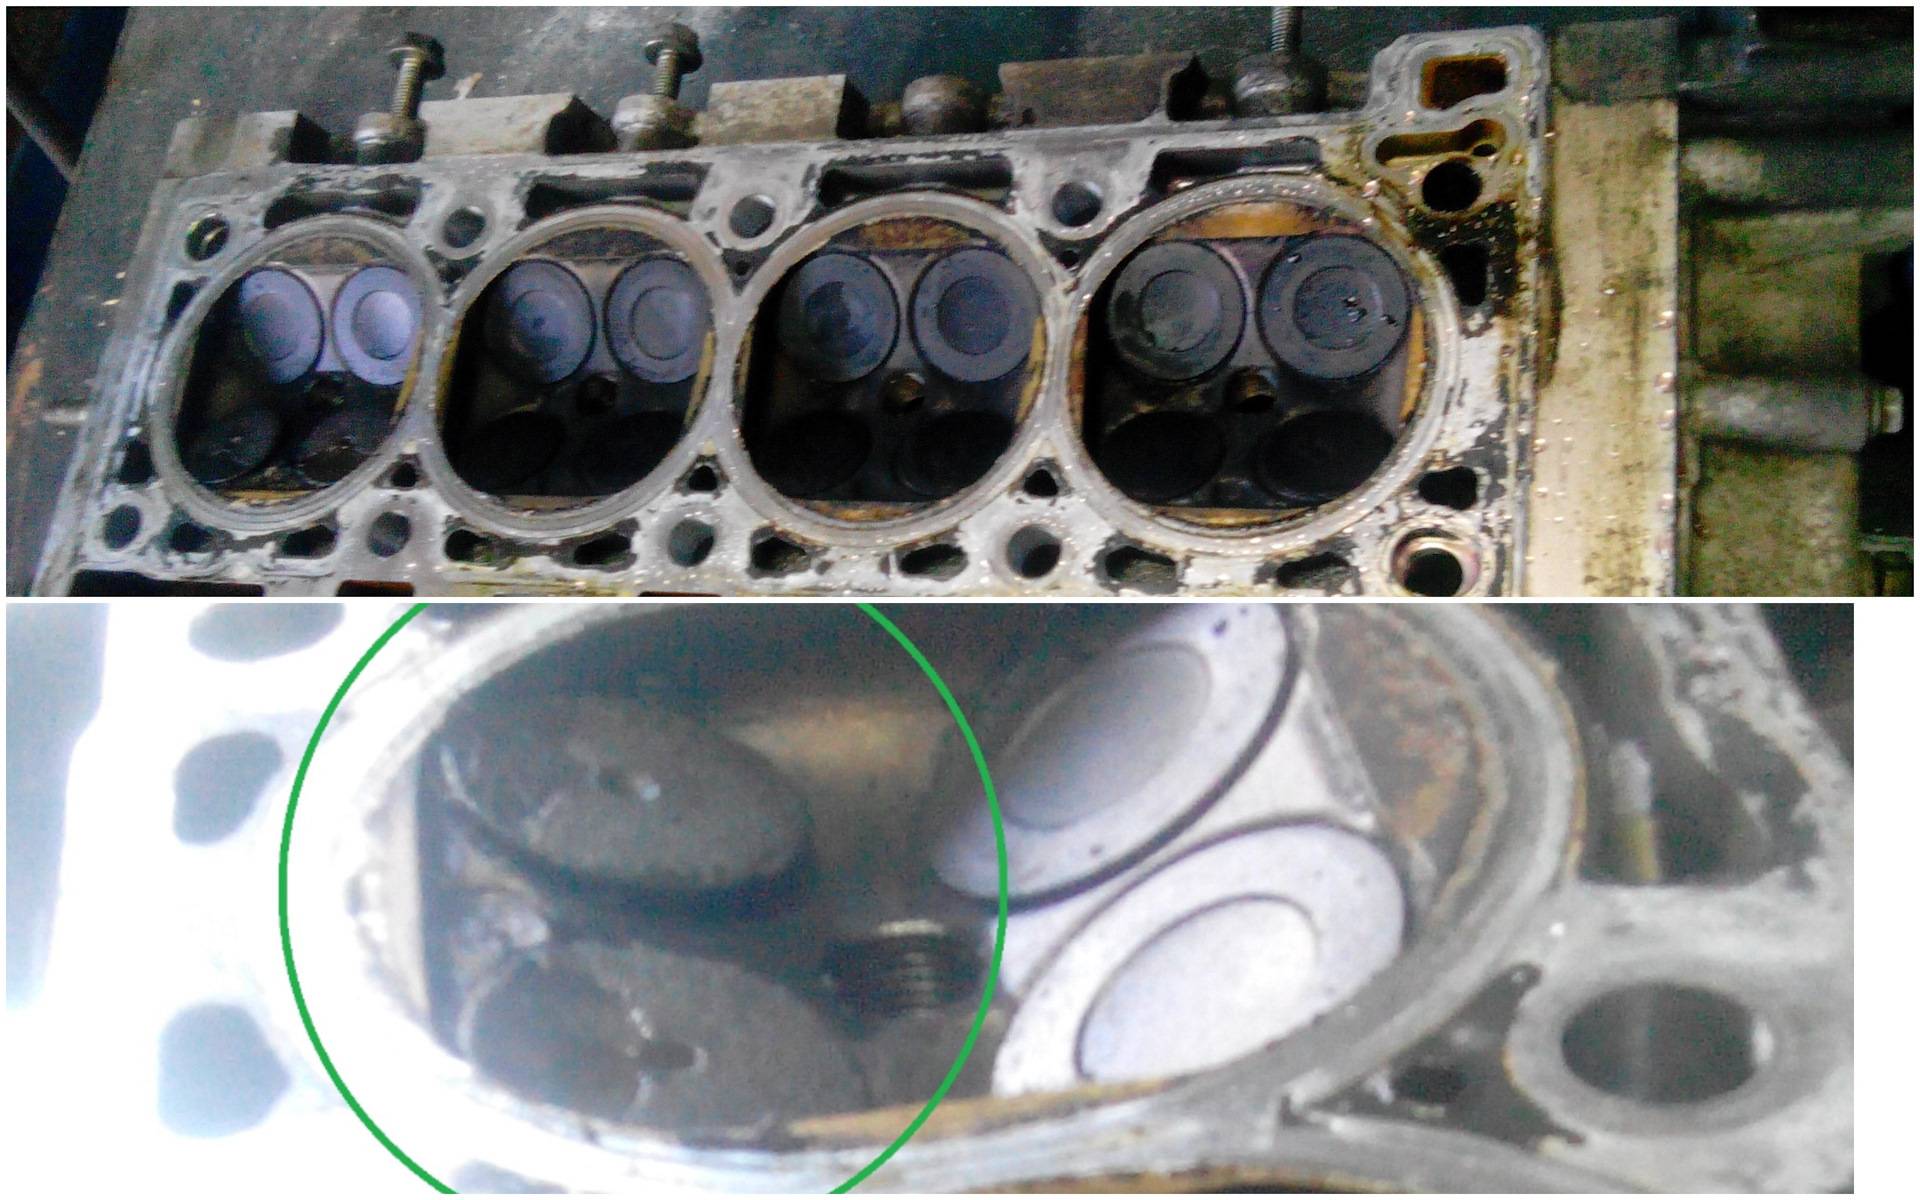 Ваз 2114 гнет. Гнутые клапана ВАЗ 2114. Загнутые клапана в ВАЗ 2114. 124 Мотор 16 клапанный гнет ли клапана. Загнуло клапана Рено Сандеро 16 клапанов.